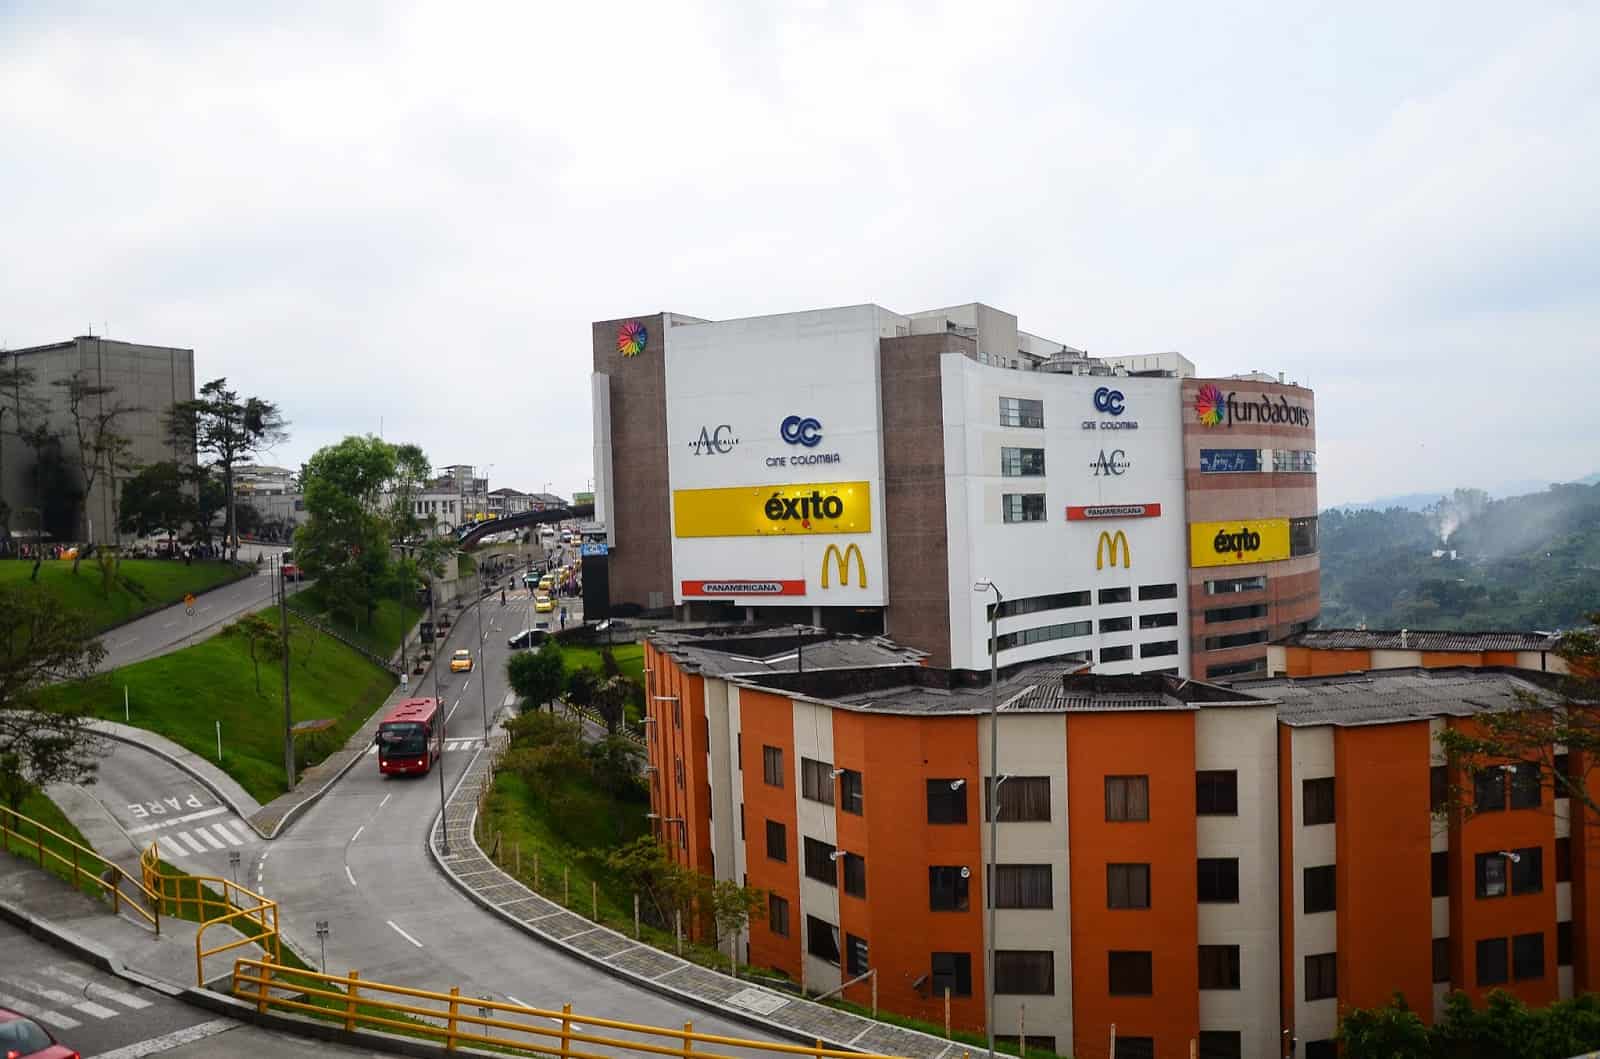 Fundadores Mall in Manizales, Caldas, Colombia